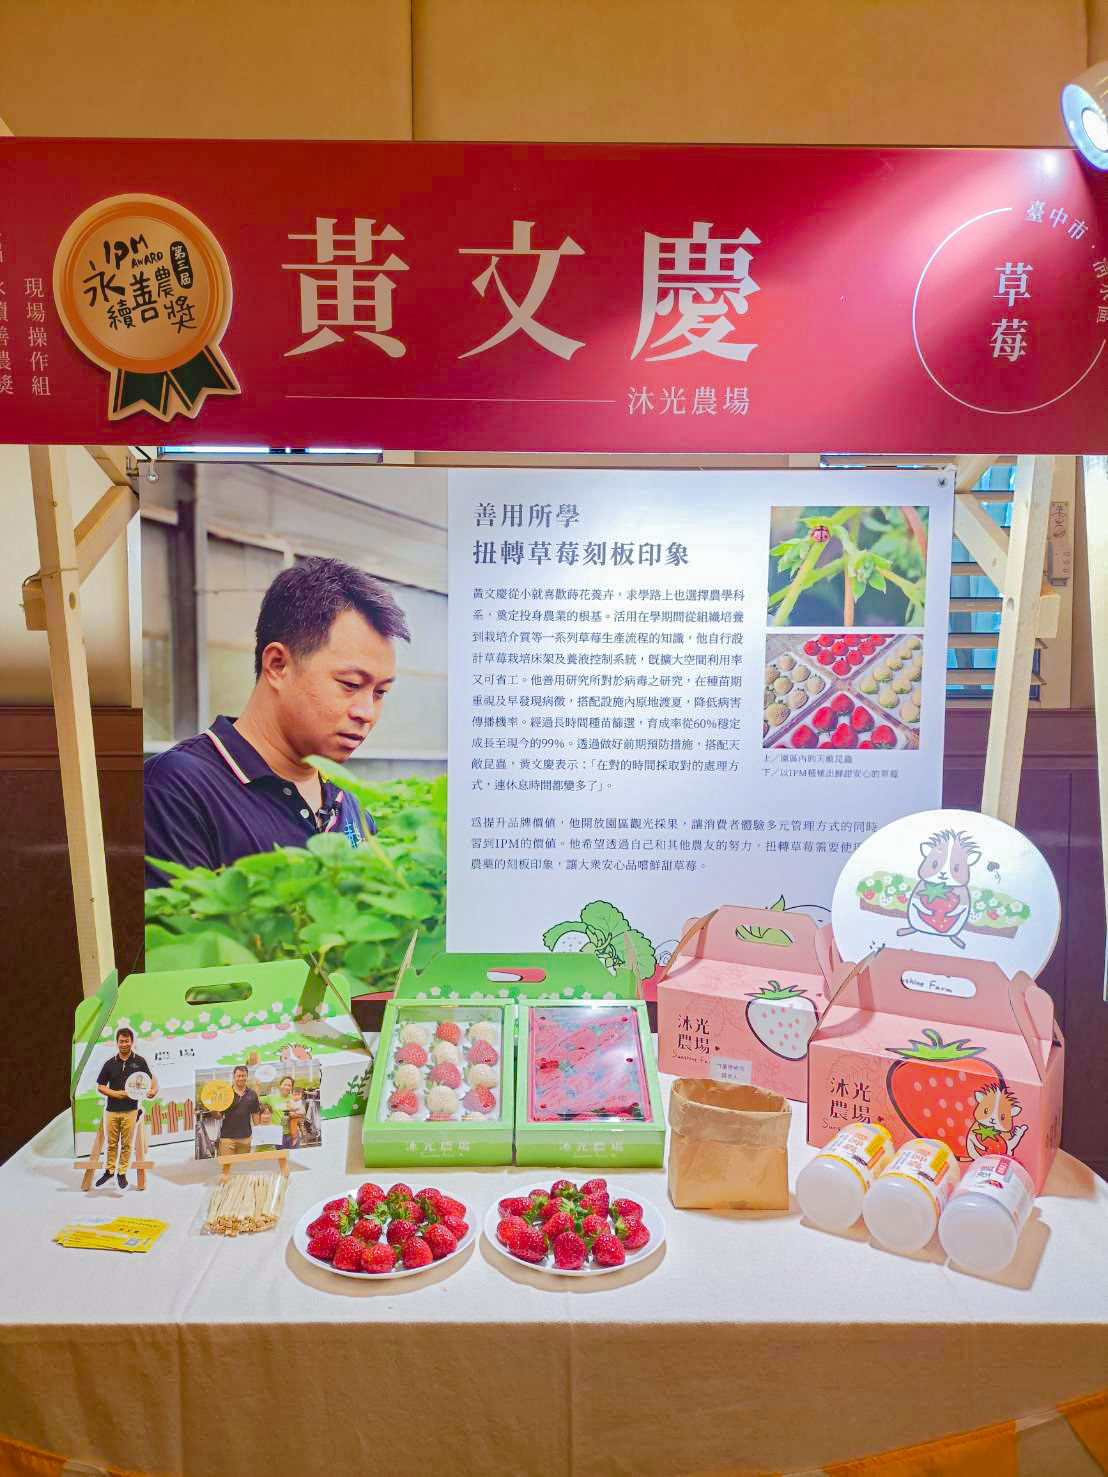 第三屆永續善農獎IPM Award現場操作組得獎人黃文慶青農現場展示栽培成果。